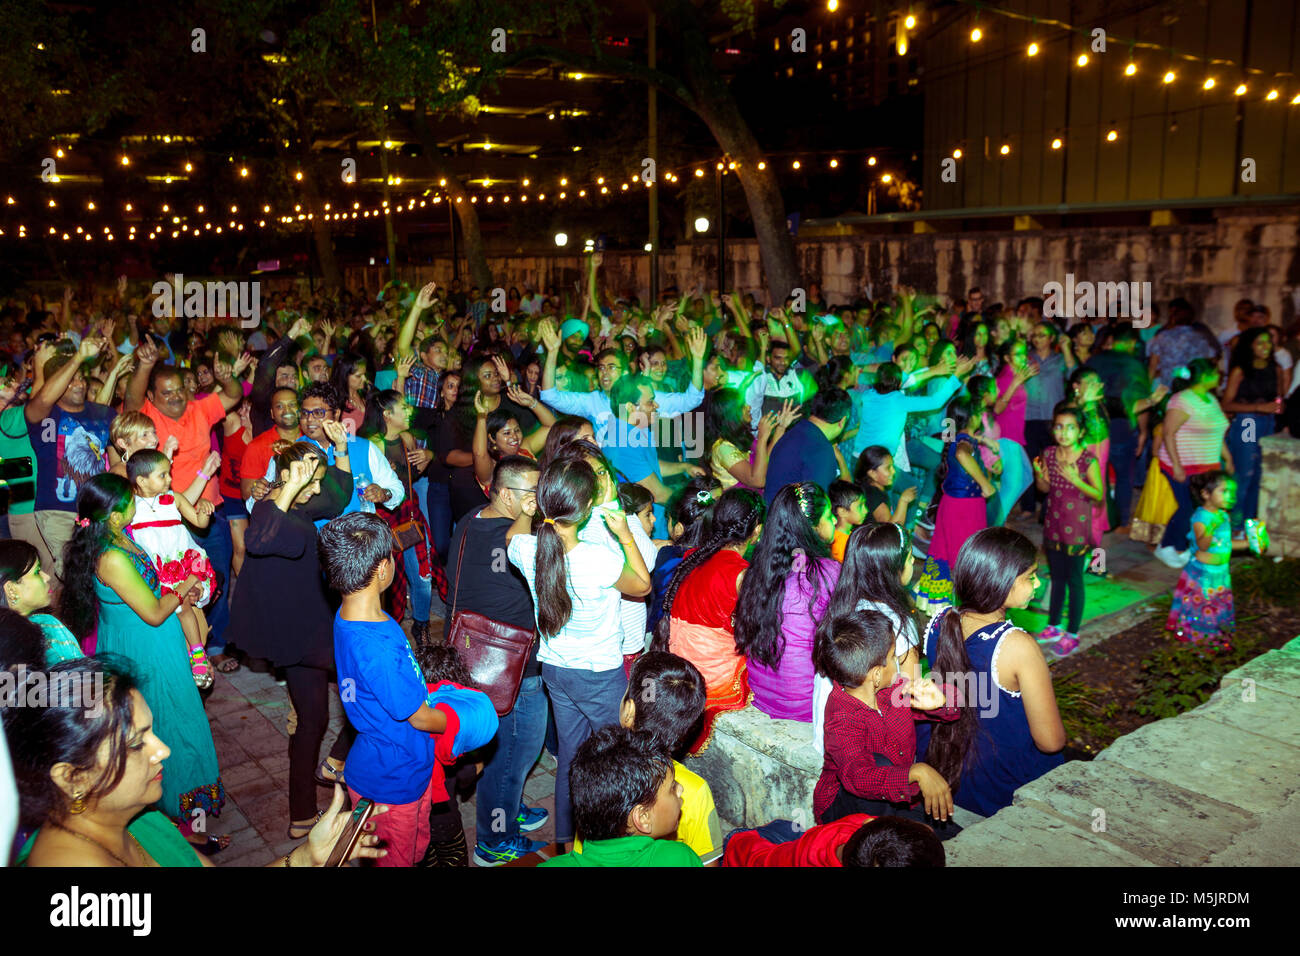 SAN ANTONIO, TEXAS - 4 novembre 2017 - Motion Blur de gens qui dansent et chantent à l'Hindou Diwali, fête des lumières, l'un des plus populaires festi Banque D'Images